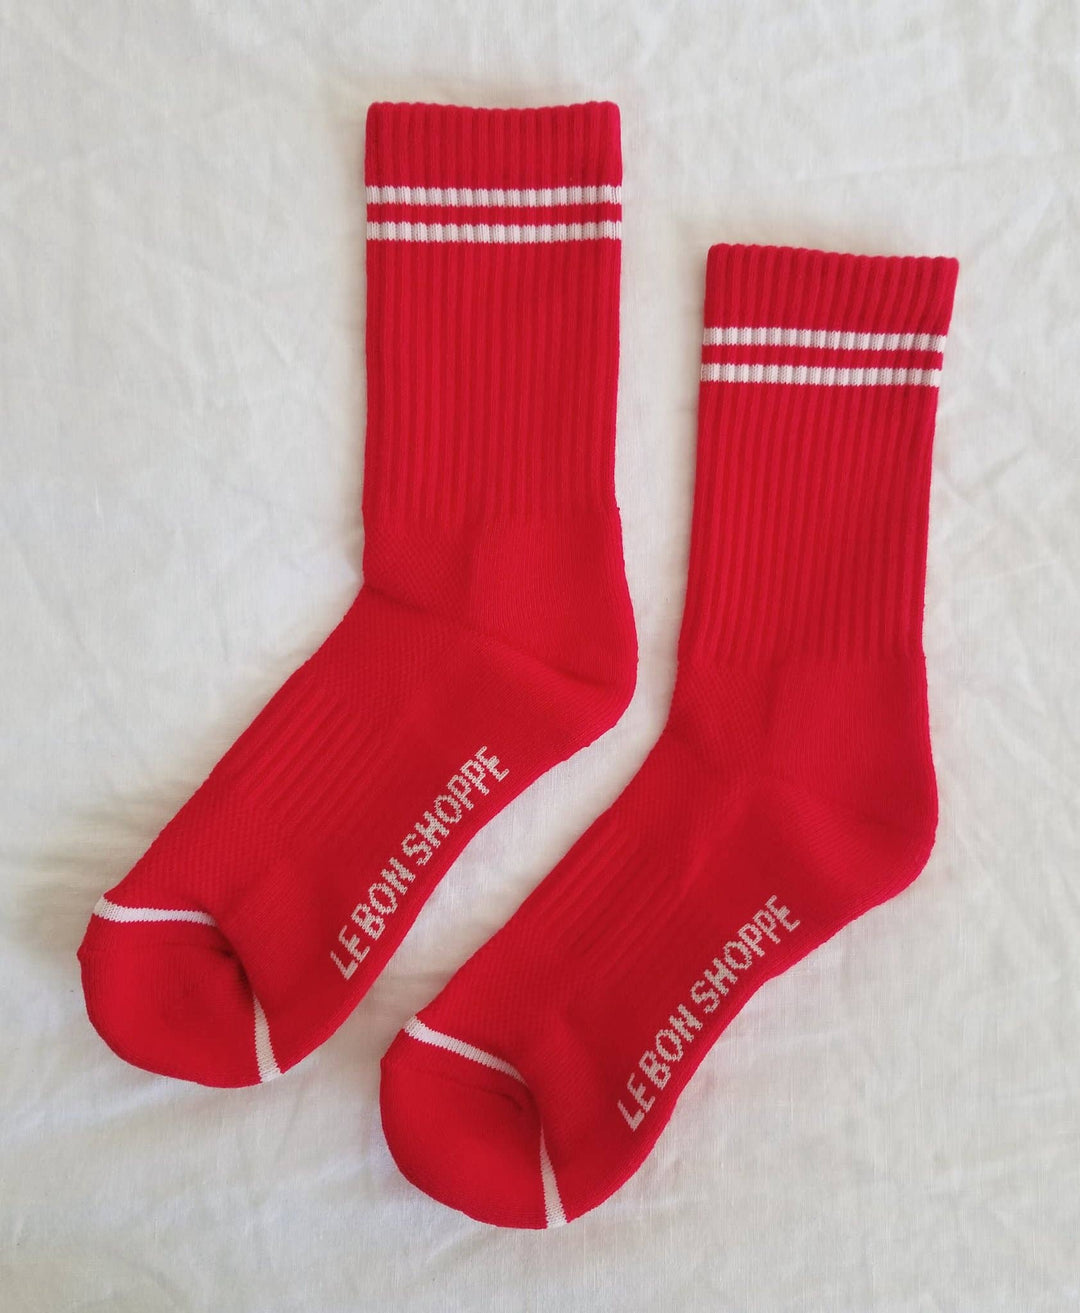 Le Bon Shoppe Boyfriend Socks: Noir